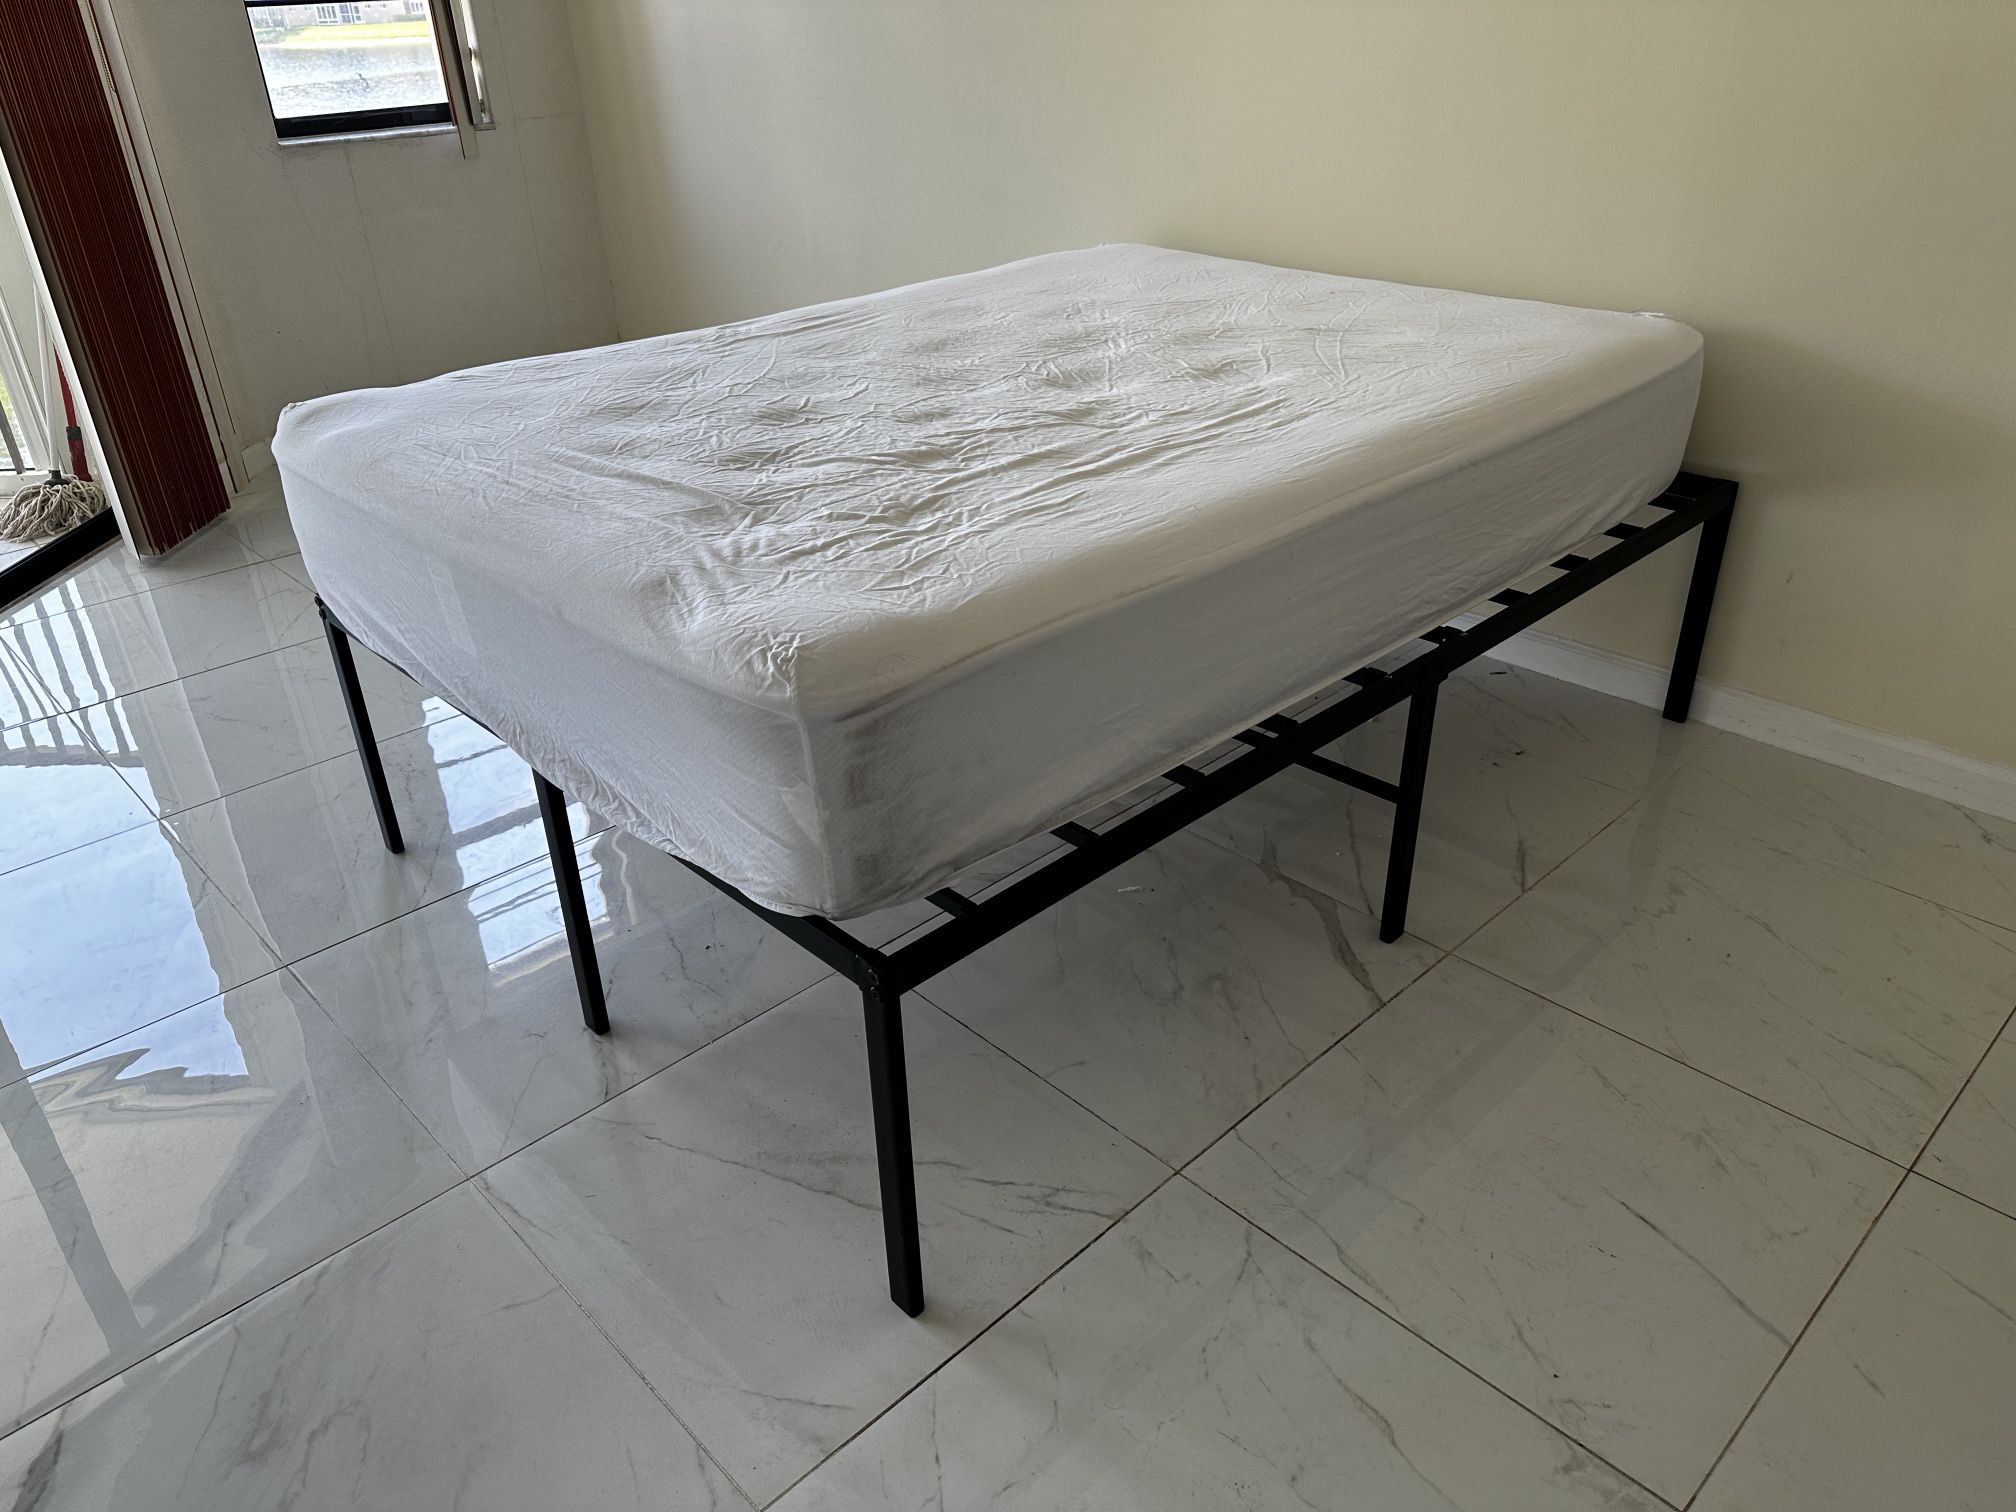 Full size Bed & Frame